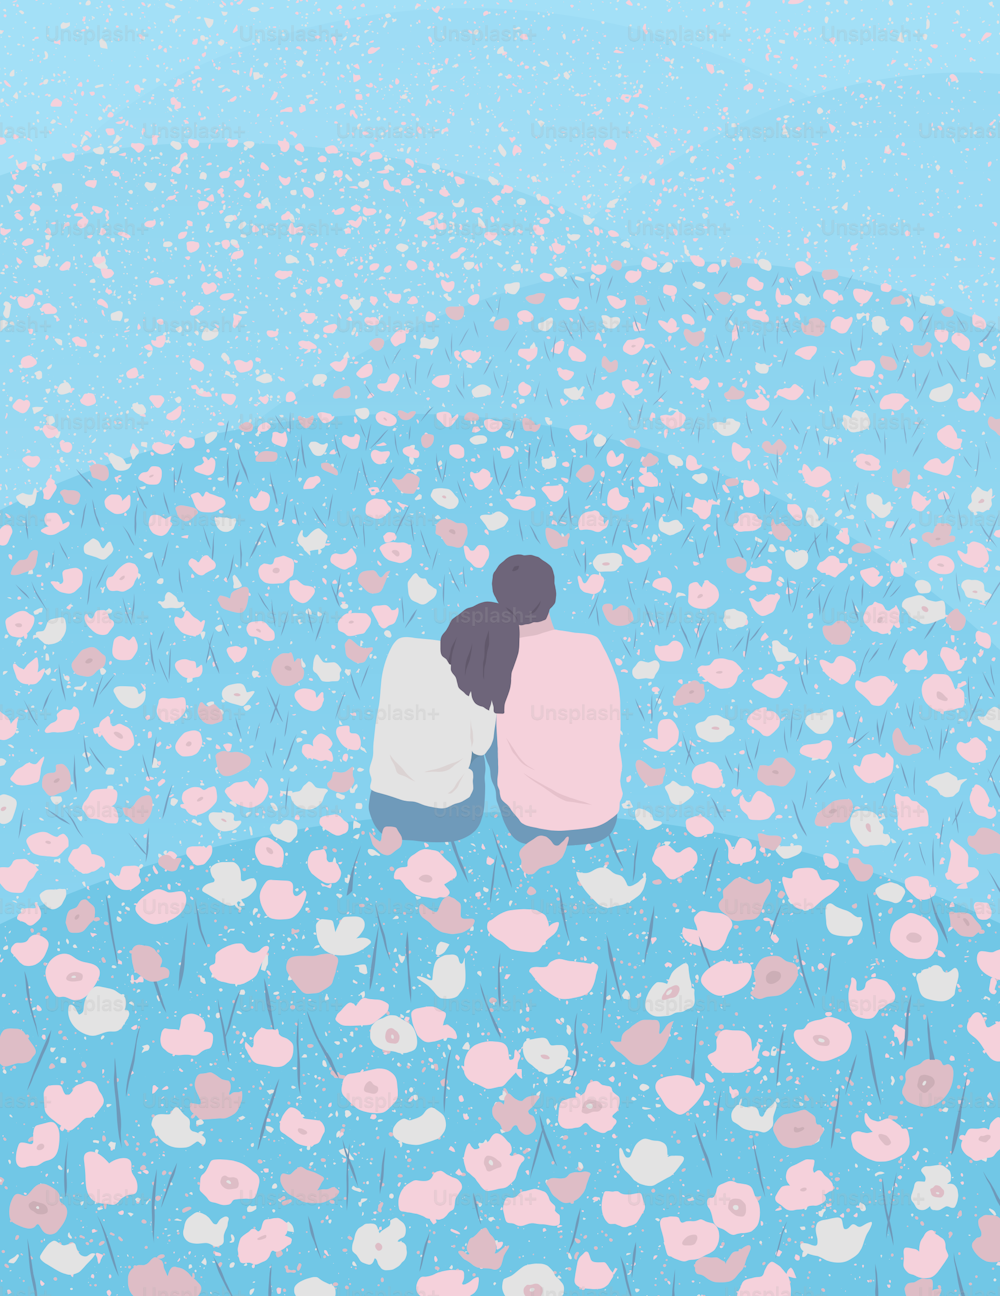 꽃밭에 앉아 있는 두 사람